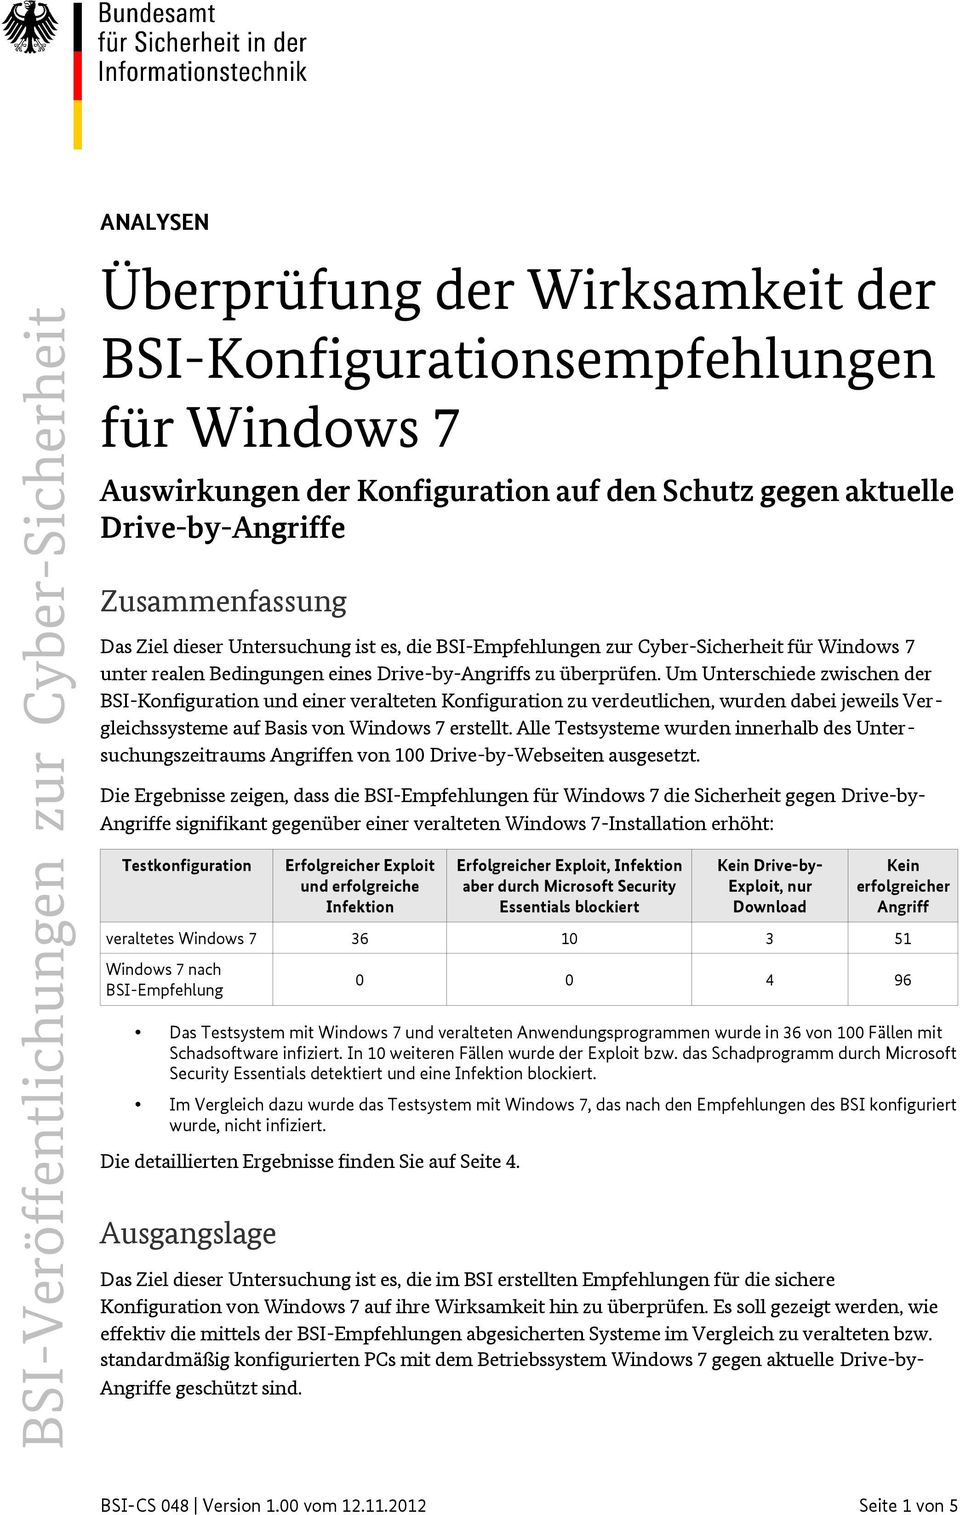 Um Unterschiede zwischen der BSI-Konfiguration und einer veralteten Konfiguration zu verdeutlichen, wurden dabei jeweils Vergleichssysteme auf Basis von Windows 7 erstellt.